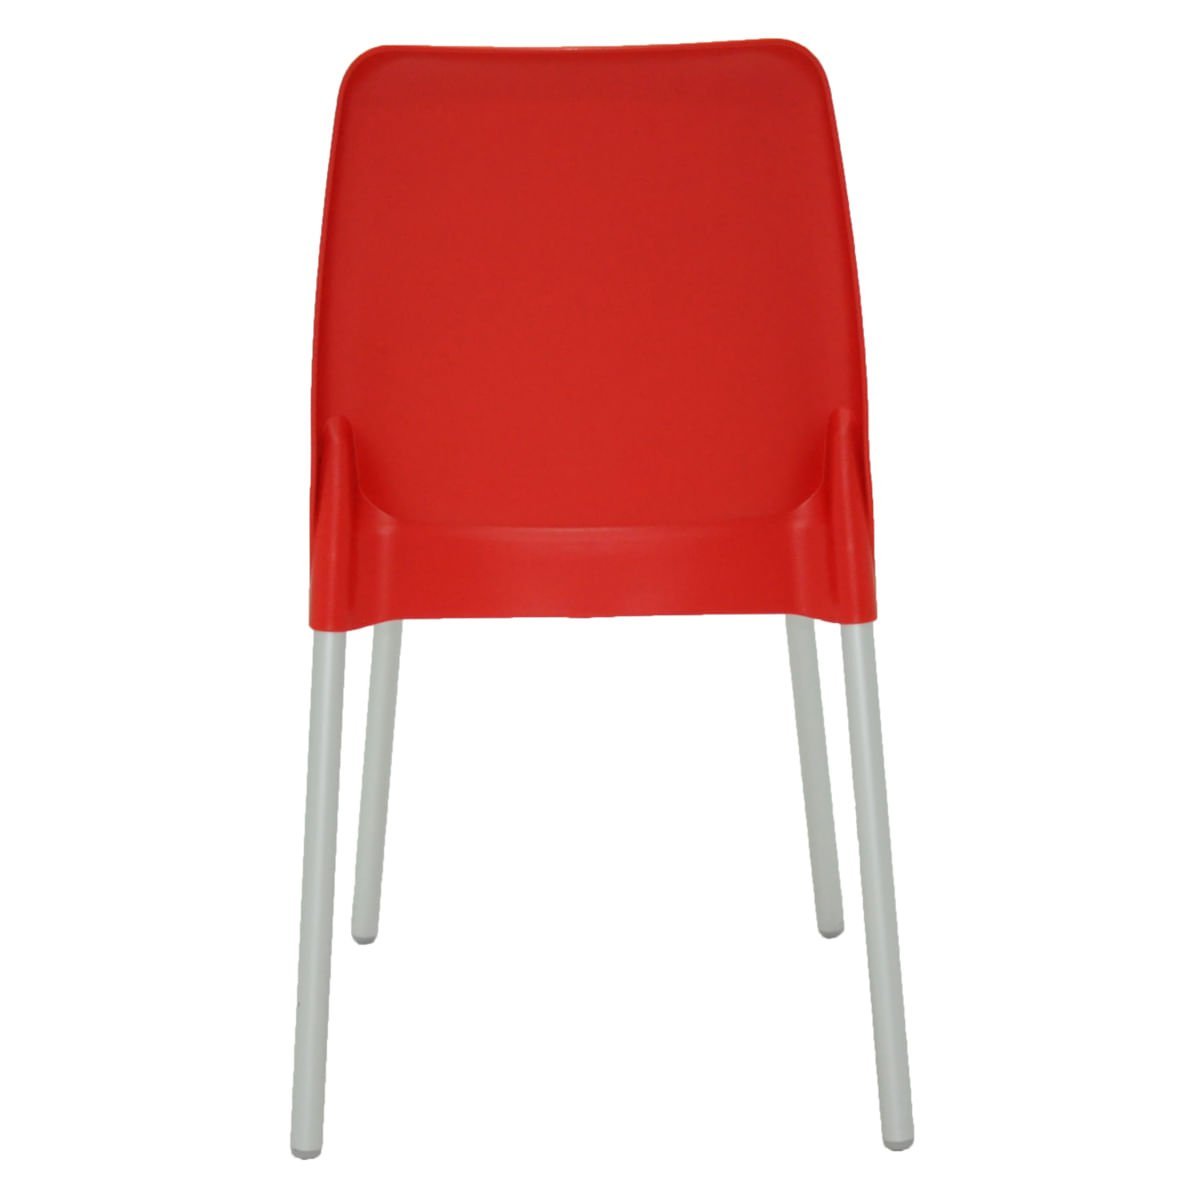 Cadeira Tramontina Vanda em Polipropileno Vermelho com Pernas de Alumínio - 6